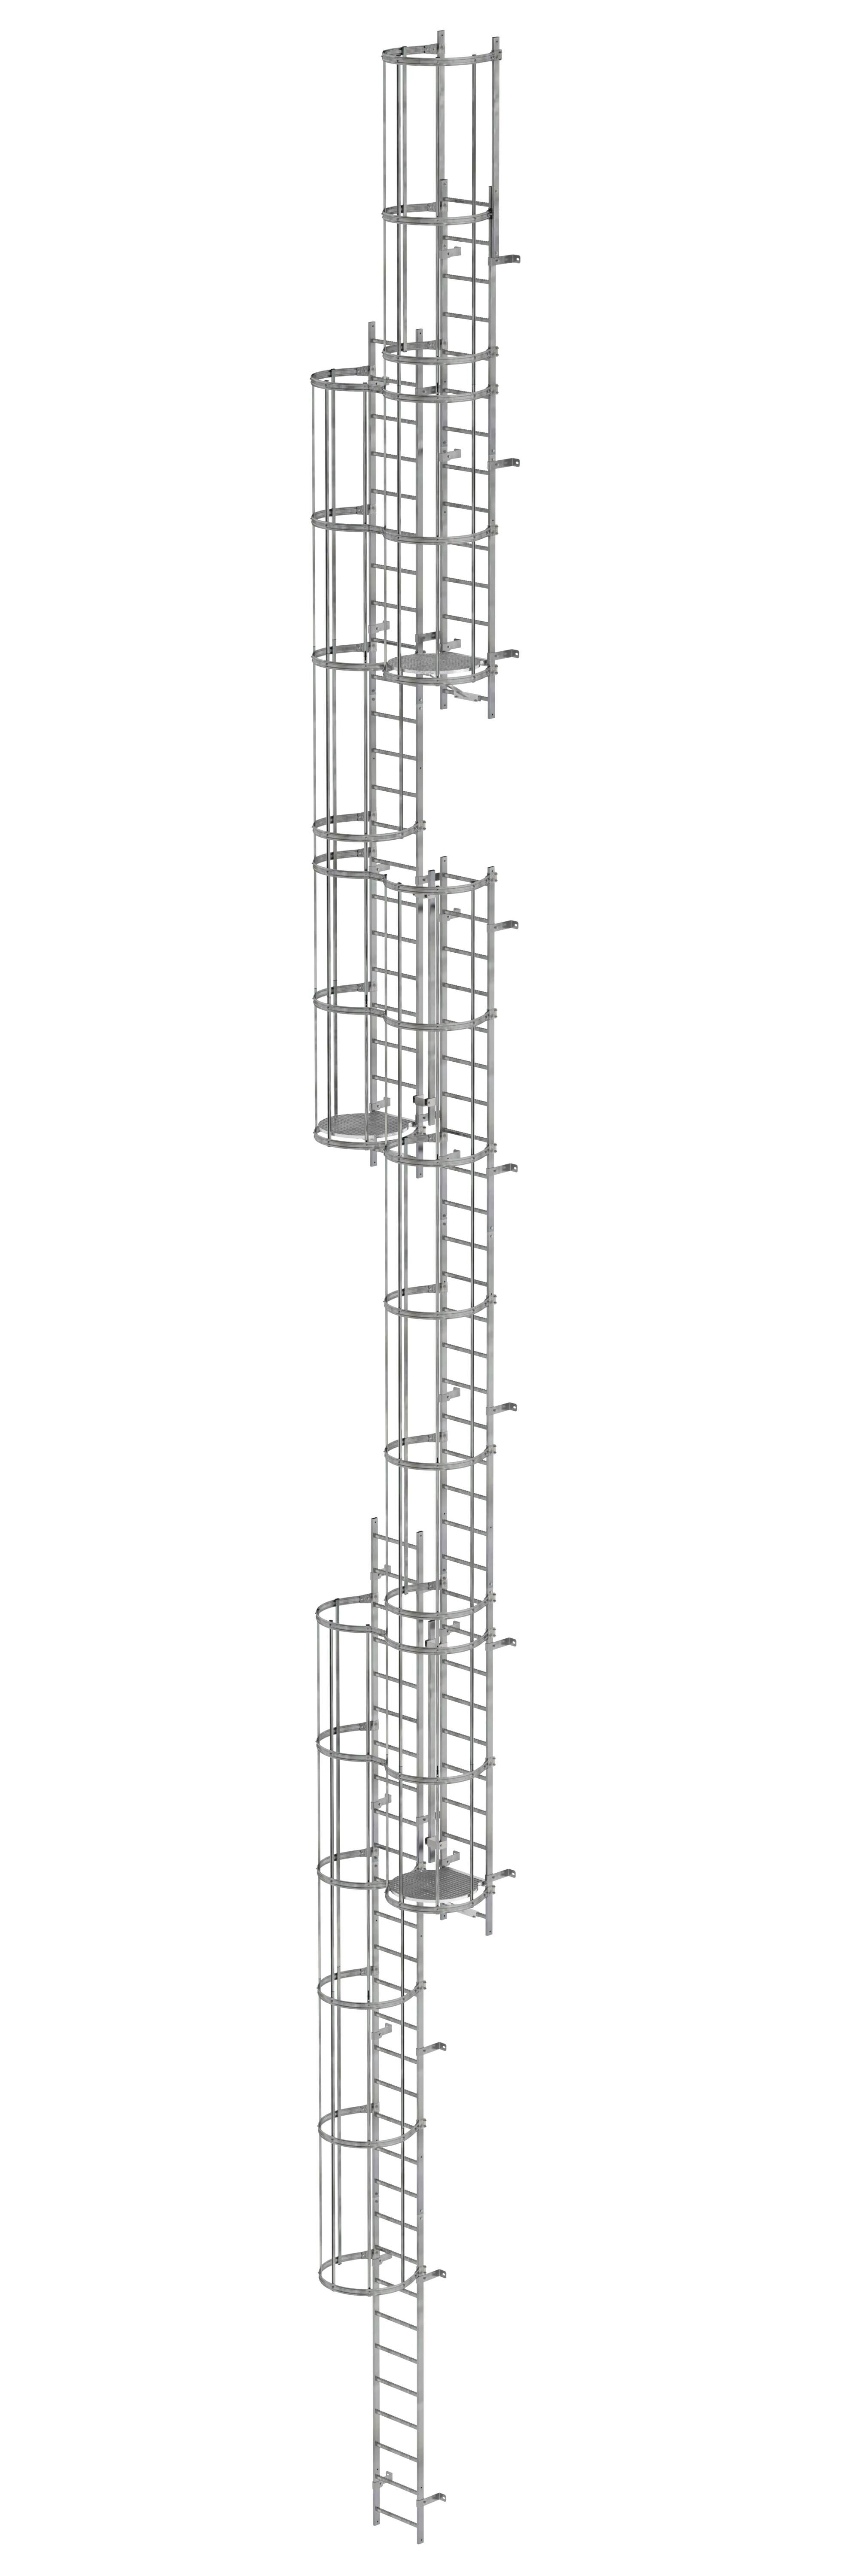 Mehrzügige Steigleiter mit Rückenschutz (Maschinen) Stahl verzinkt 19,96m